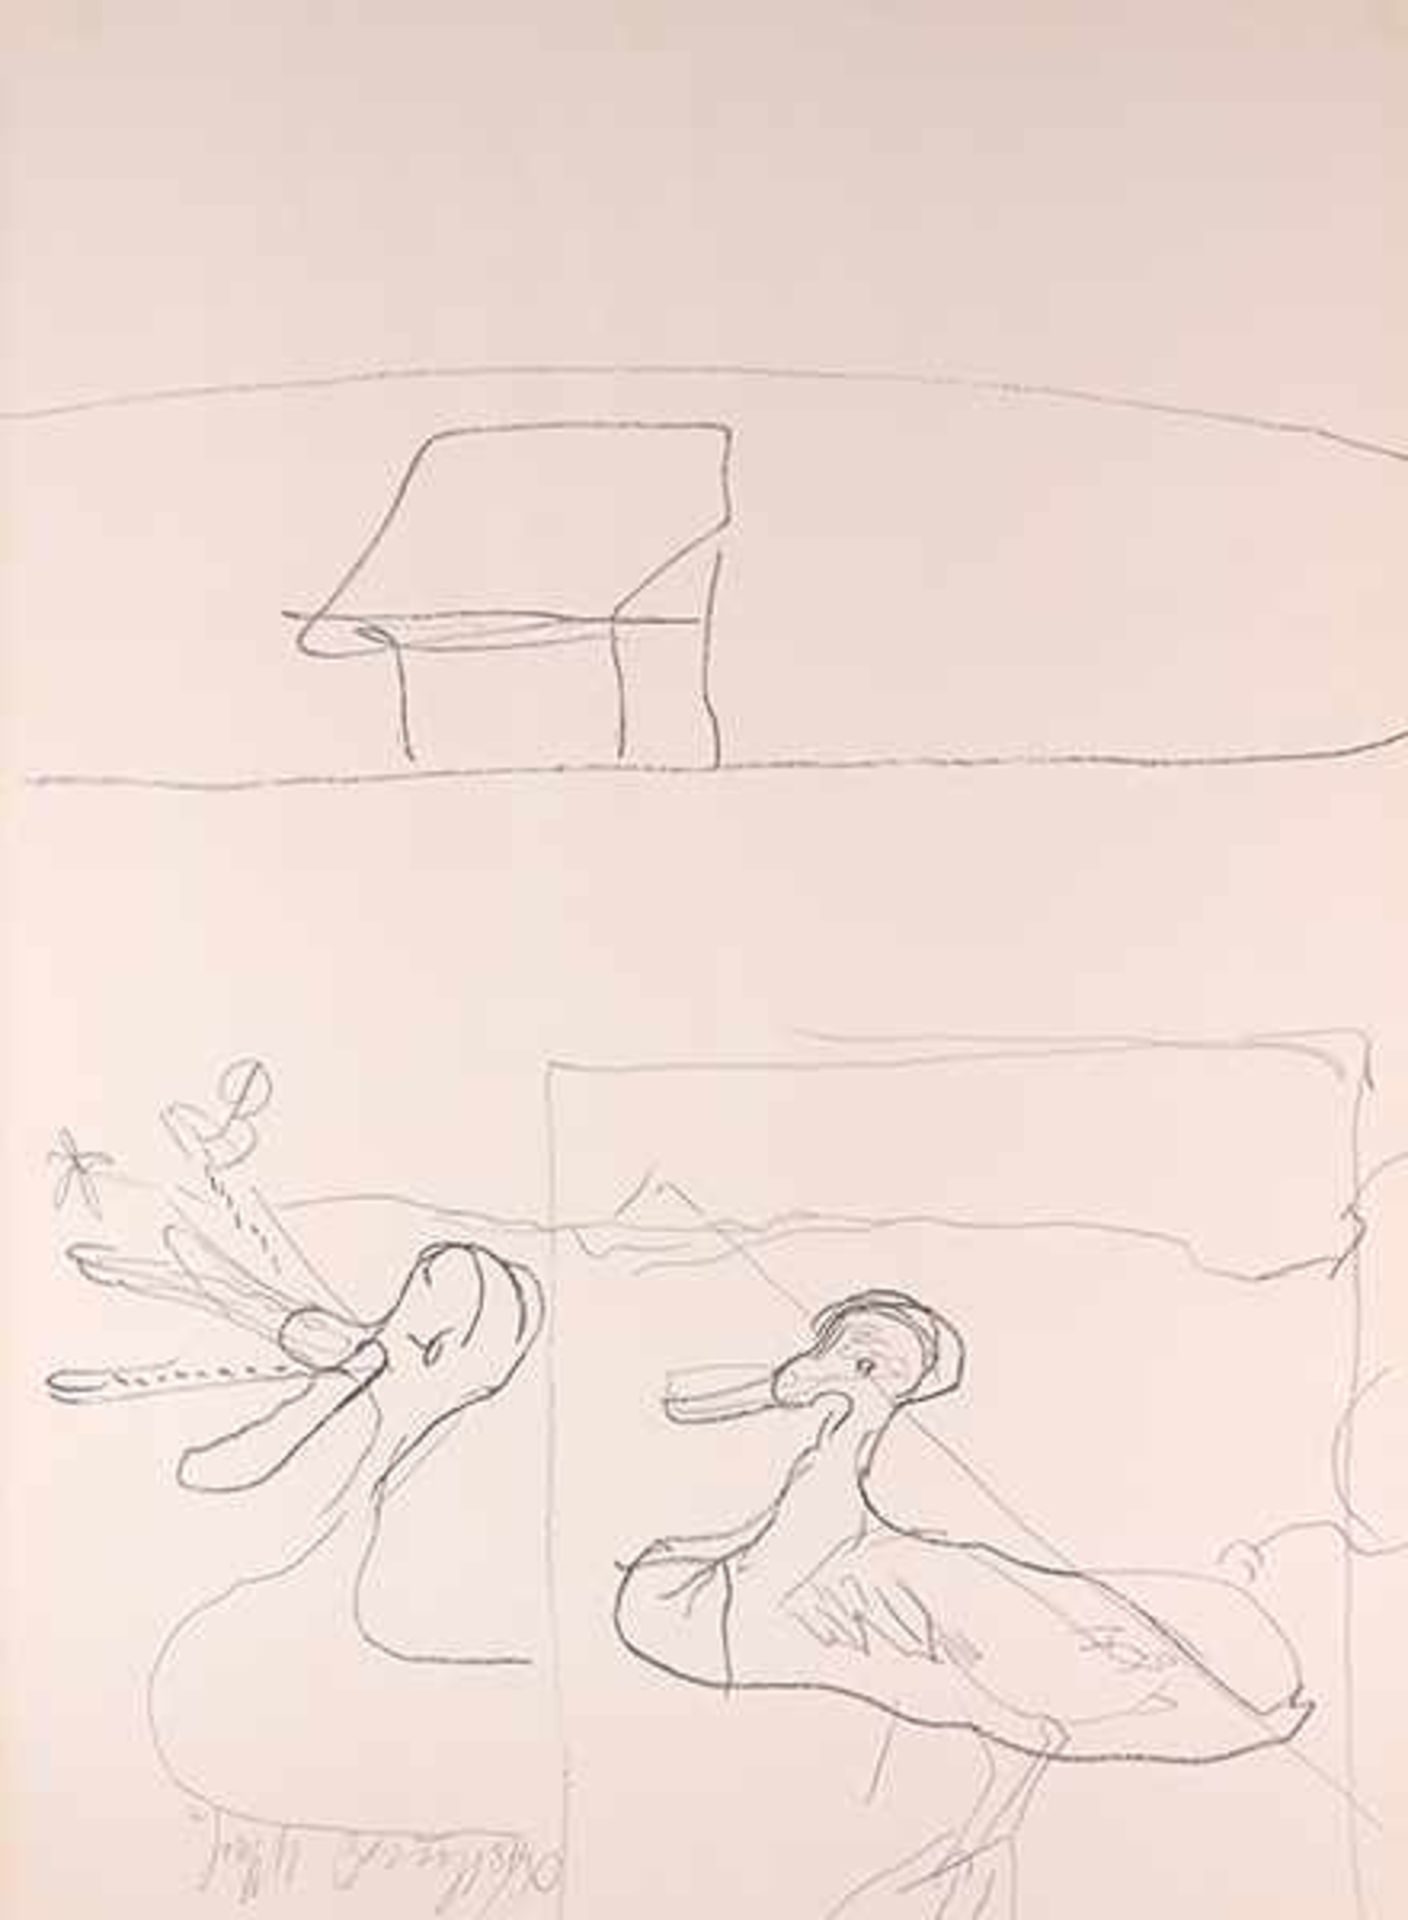 Beuys, Joseph. Geschnatter unterhalb der Hütte. Lithographie auf lachsfarbenem, dünnen Karton. Links